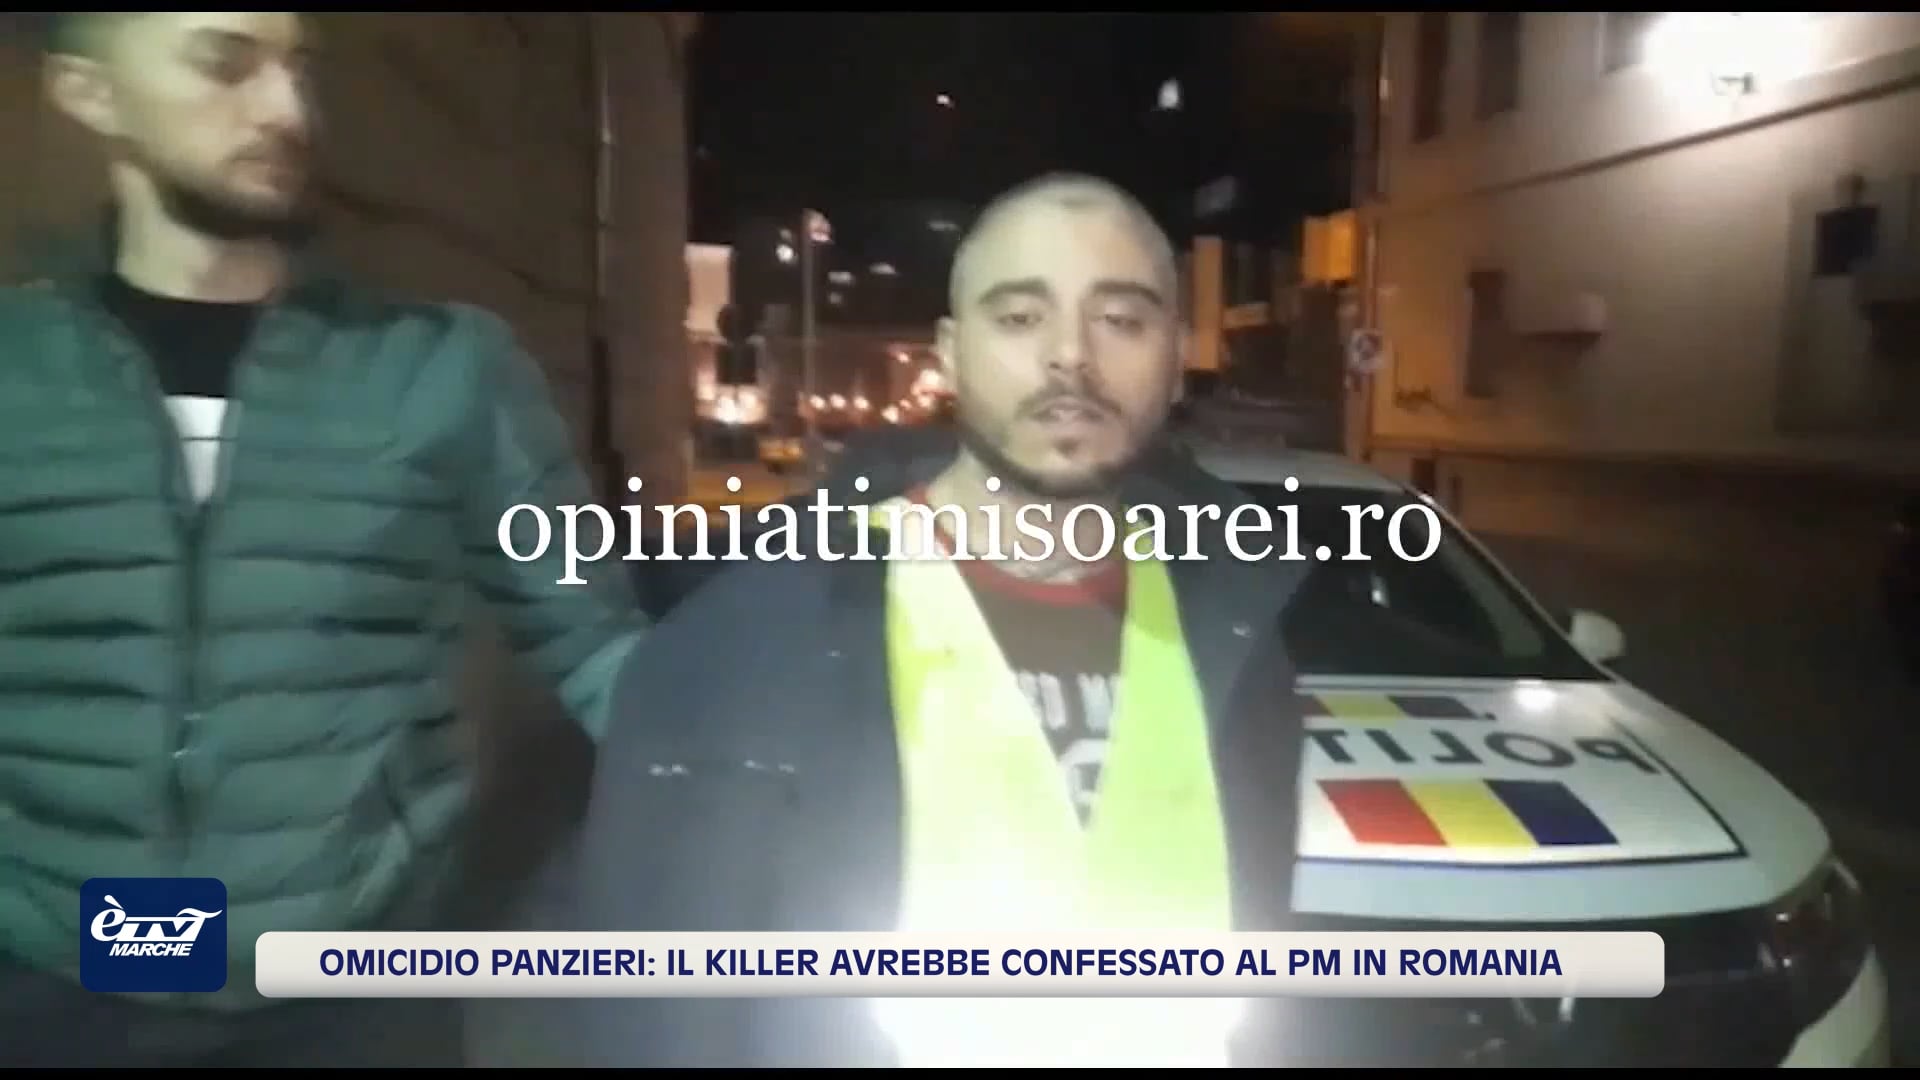 Omicidio Panzieri.  Michael Alessandrini avrebbe  ammesso l'omicidio al PM in Romania - VIDEO